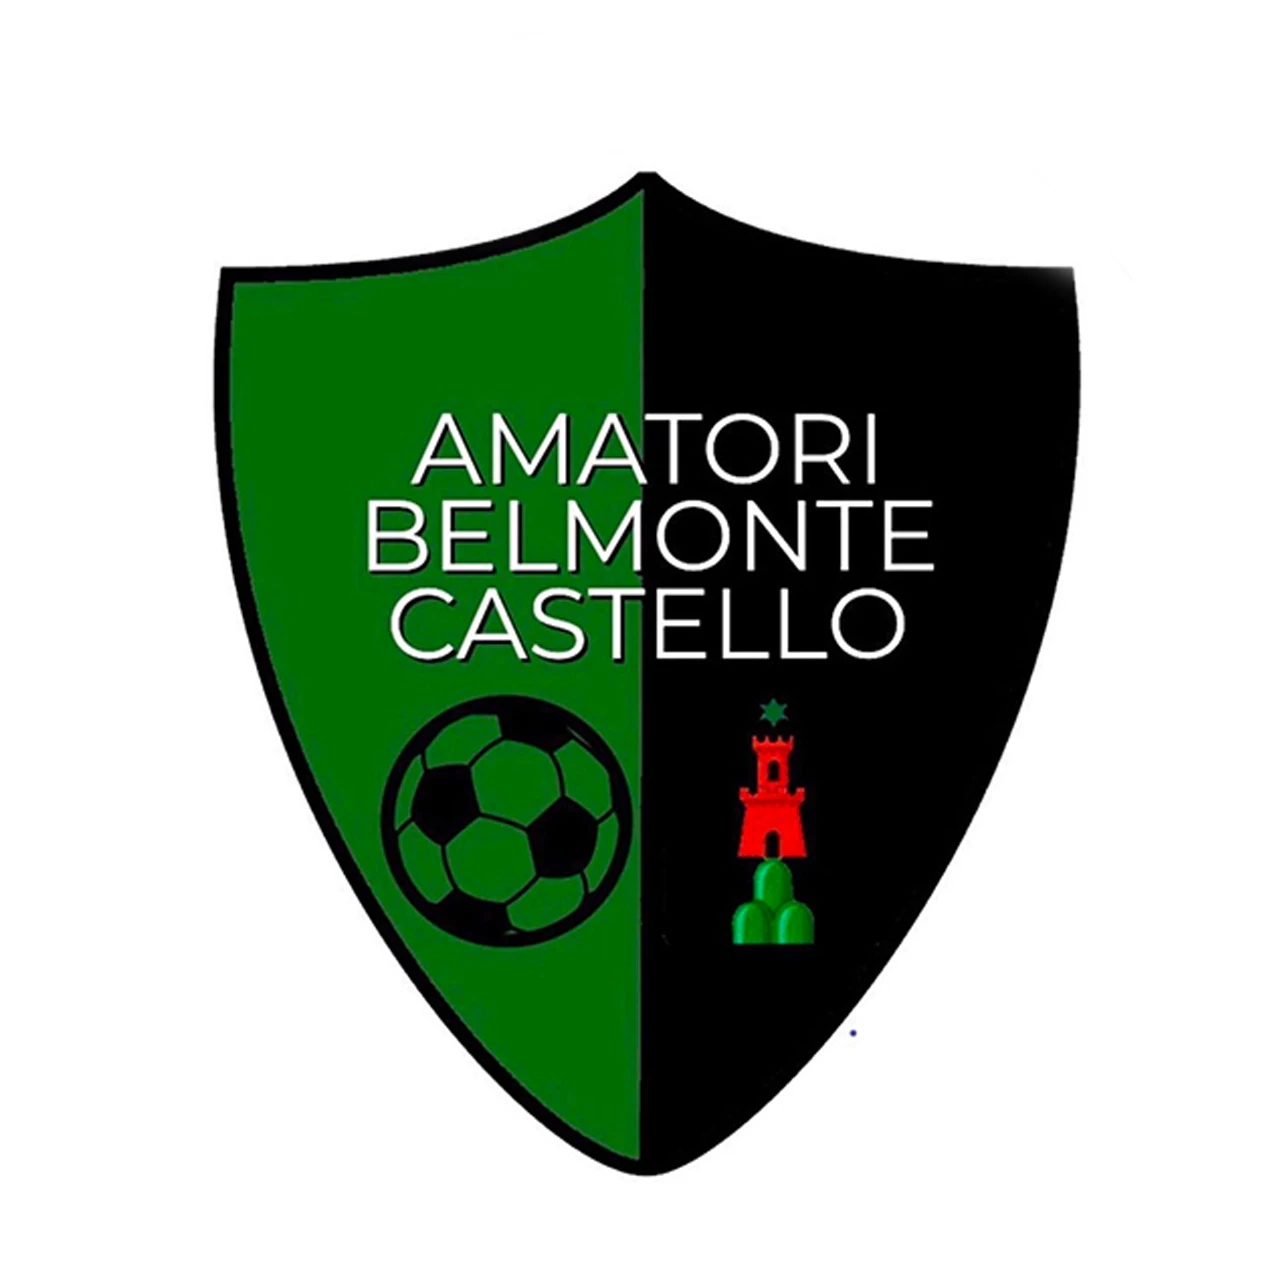 Amatori Belmonte Castello